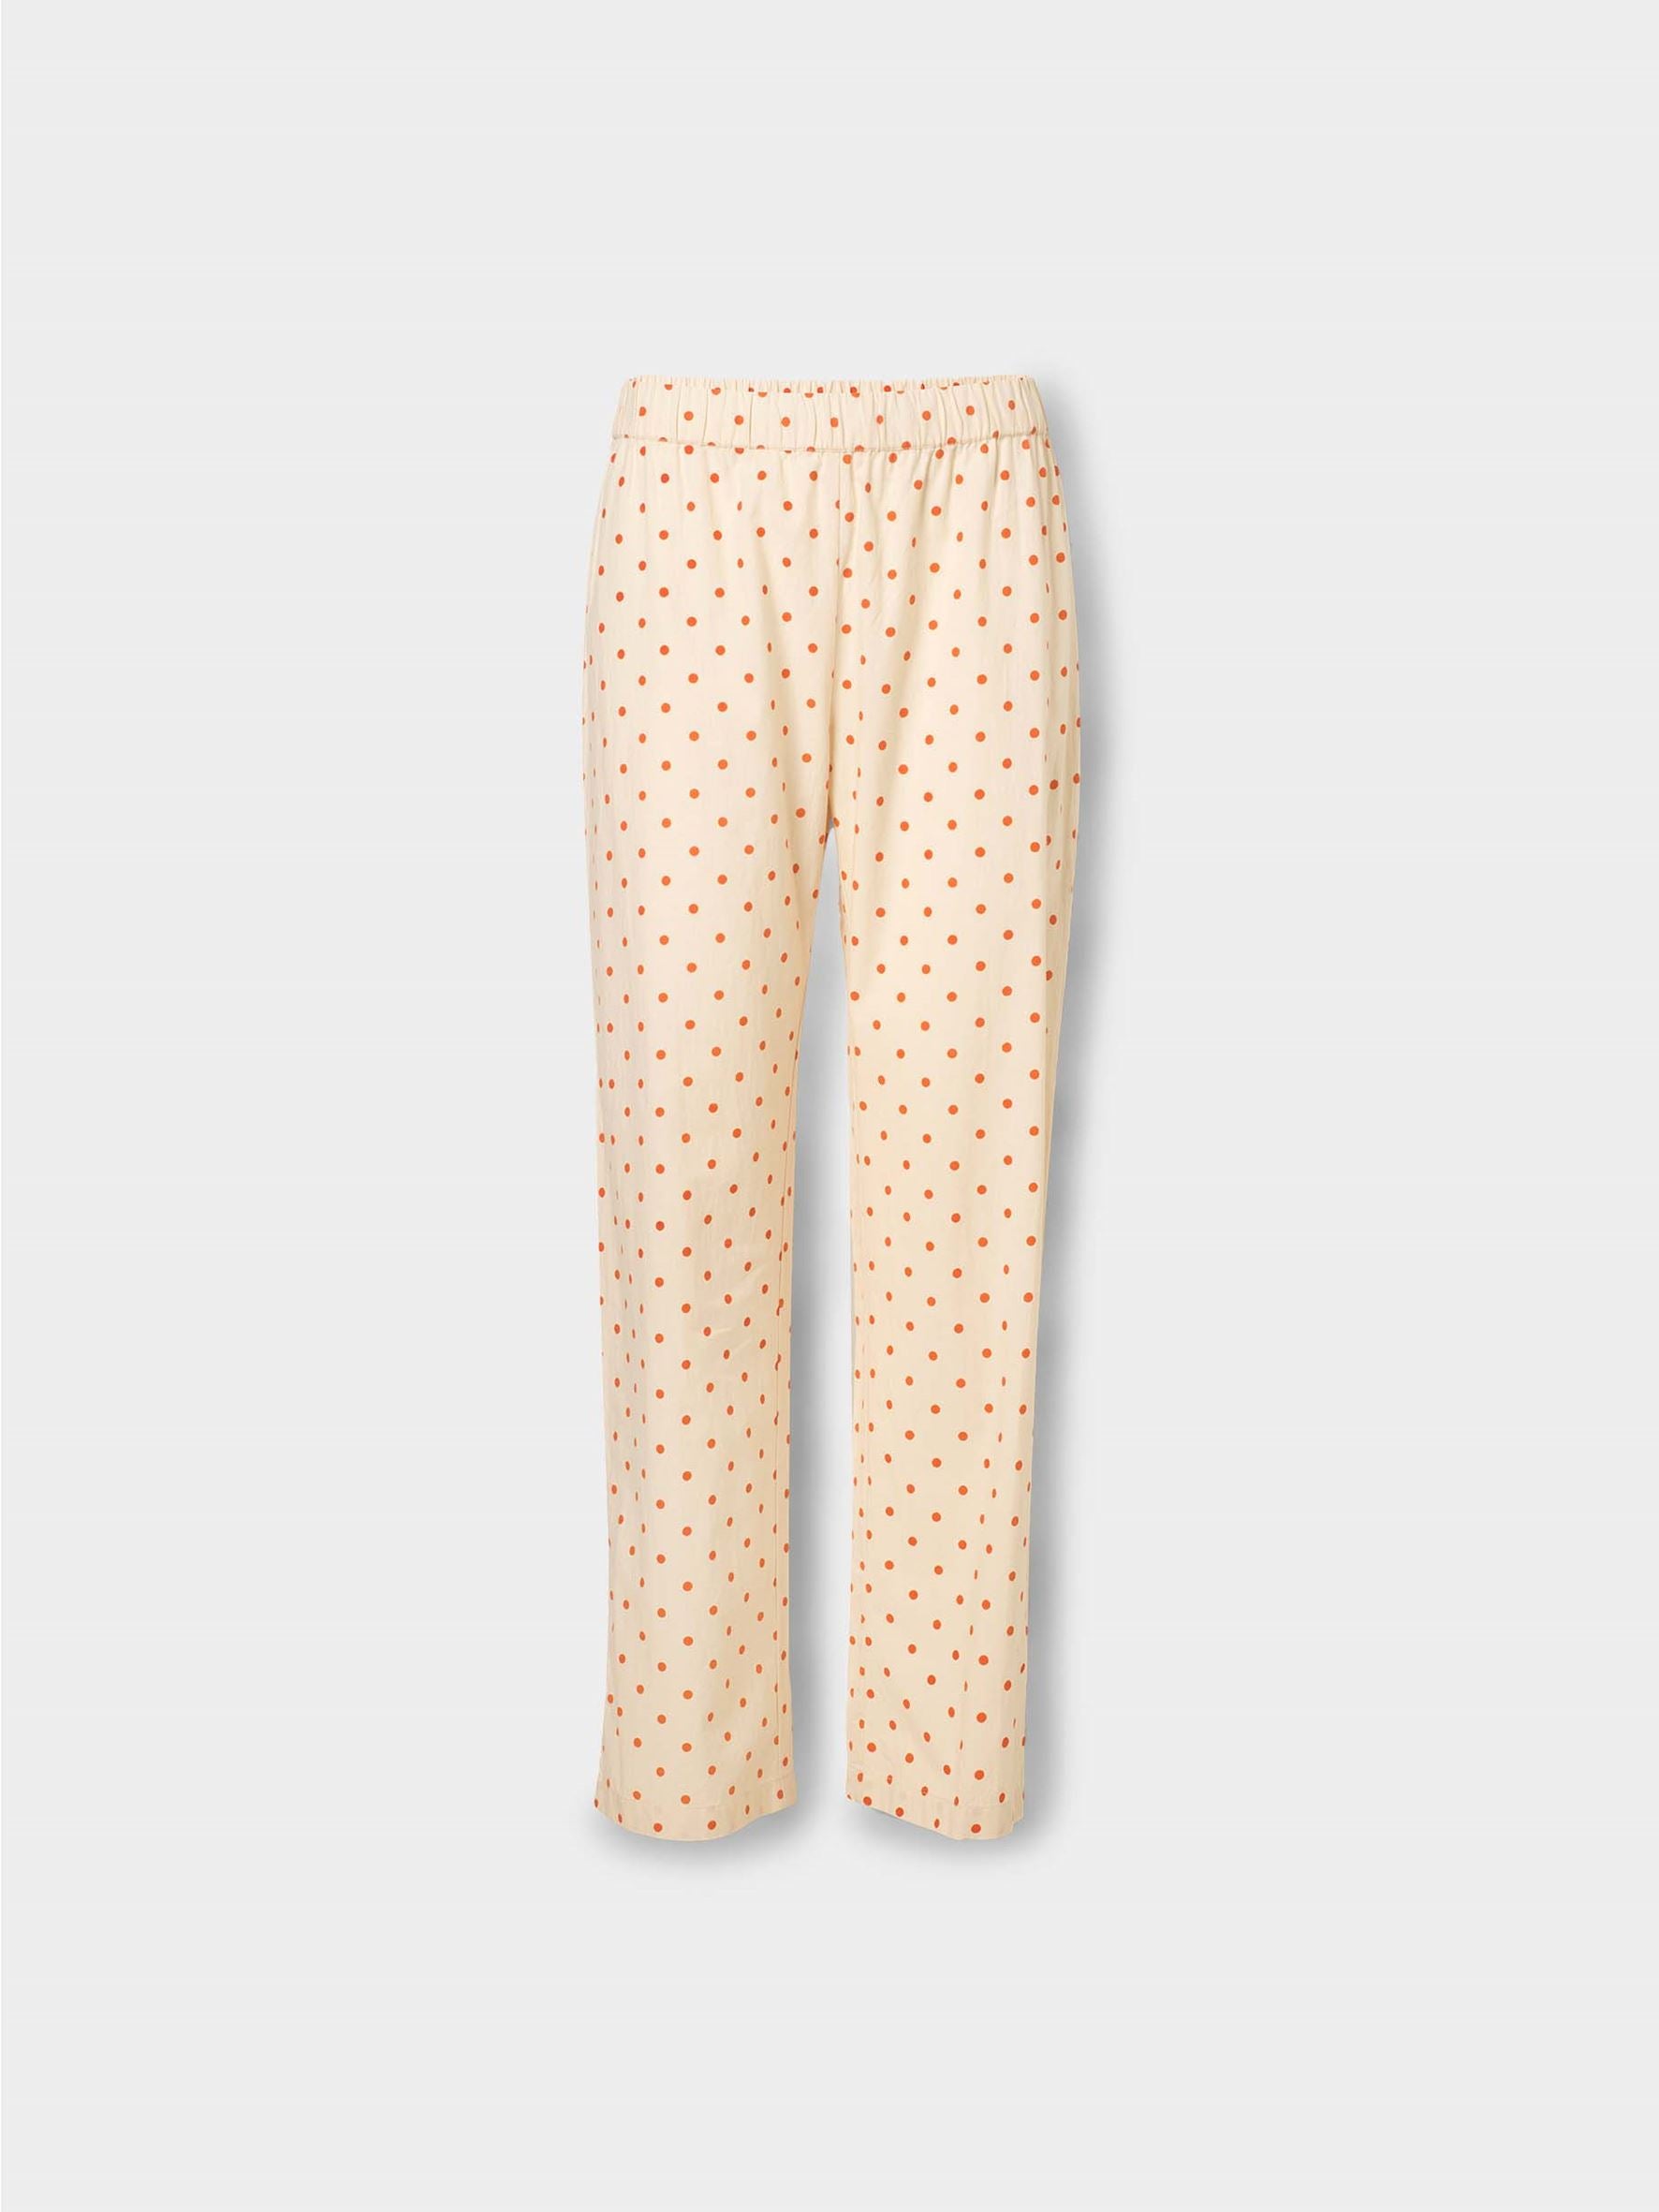 Dot Pyjamas Pants Clothing   BeckSöndergaard.no